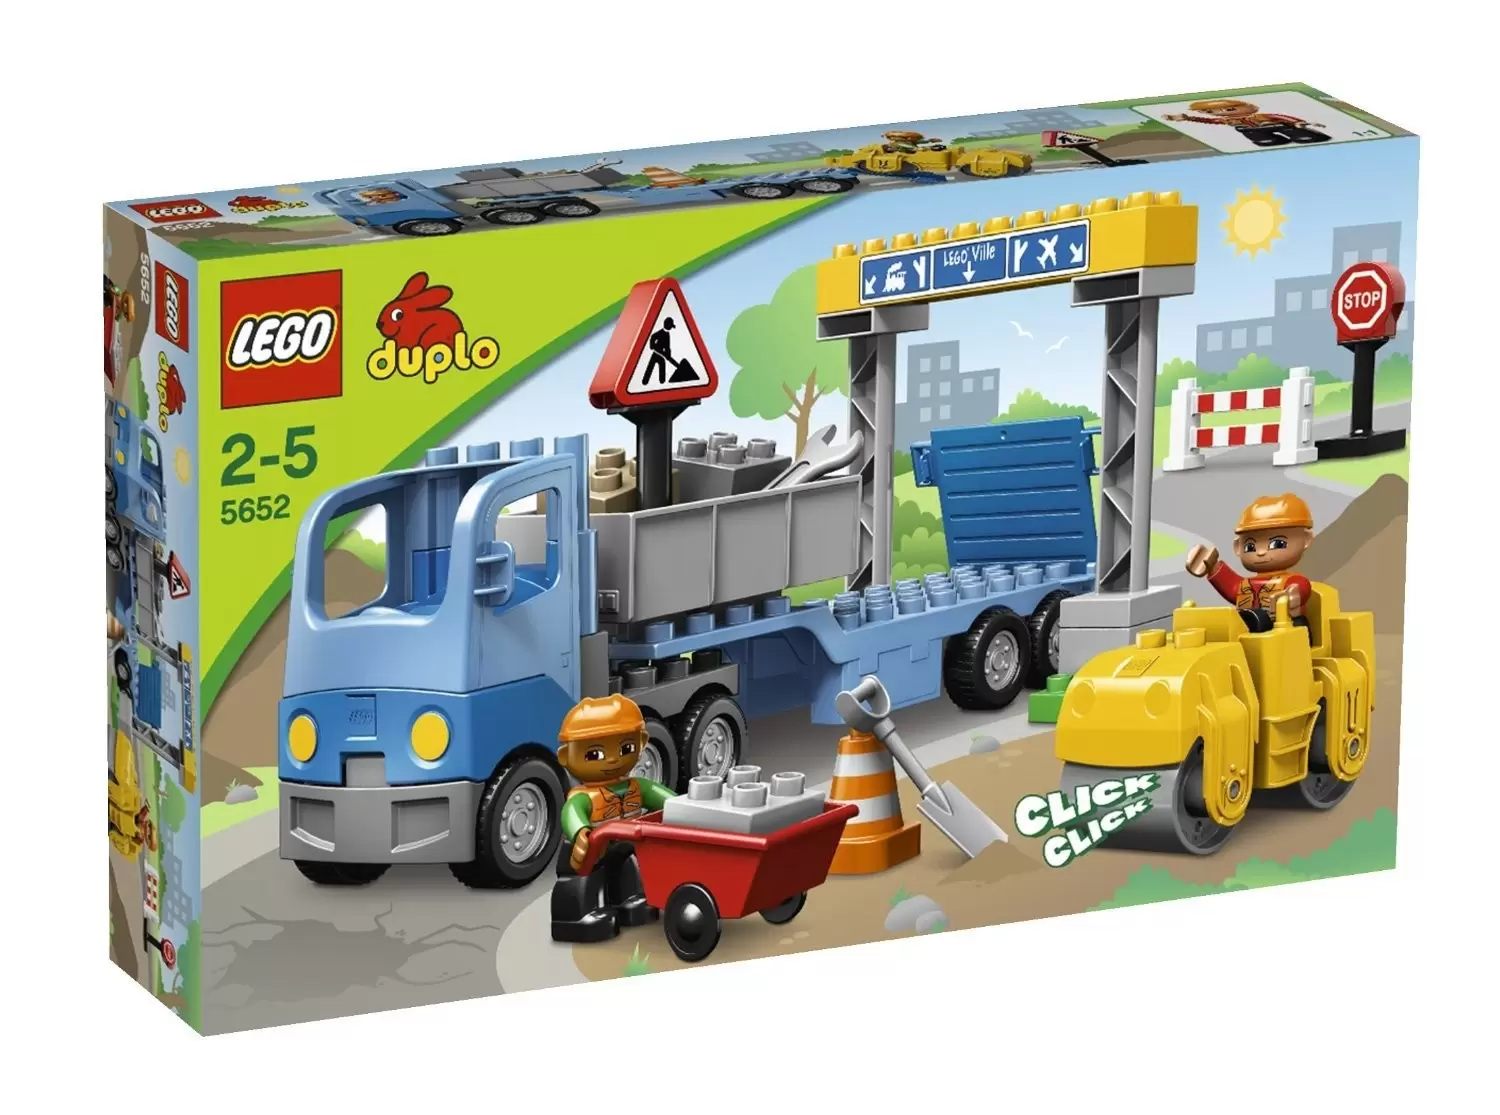 LEGO Duplo - Road Construction